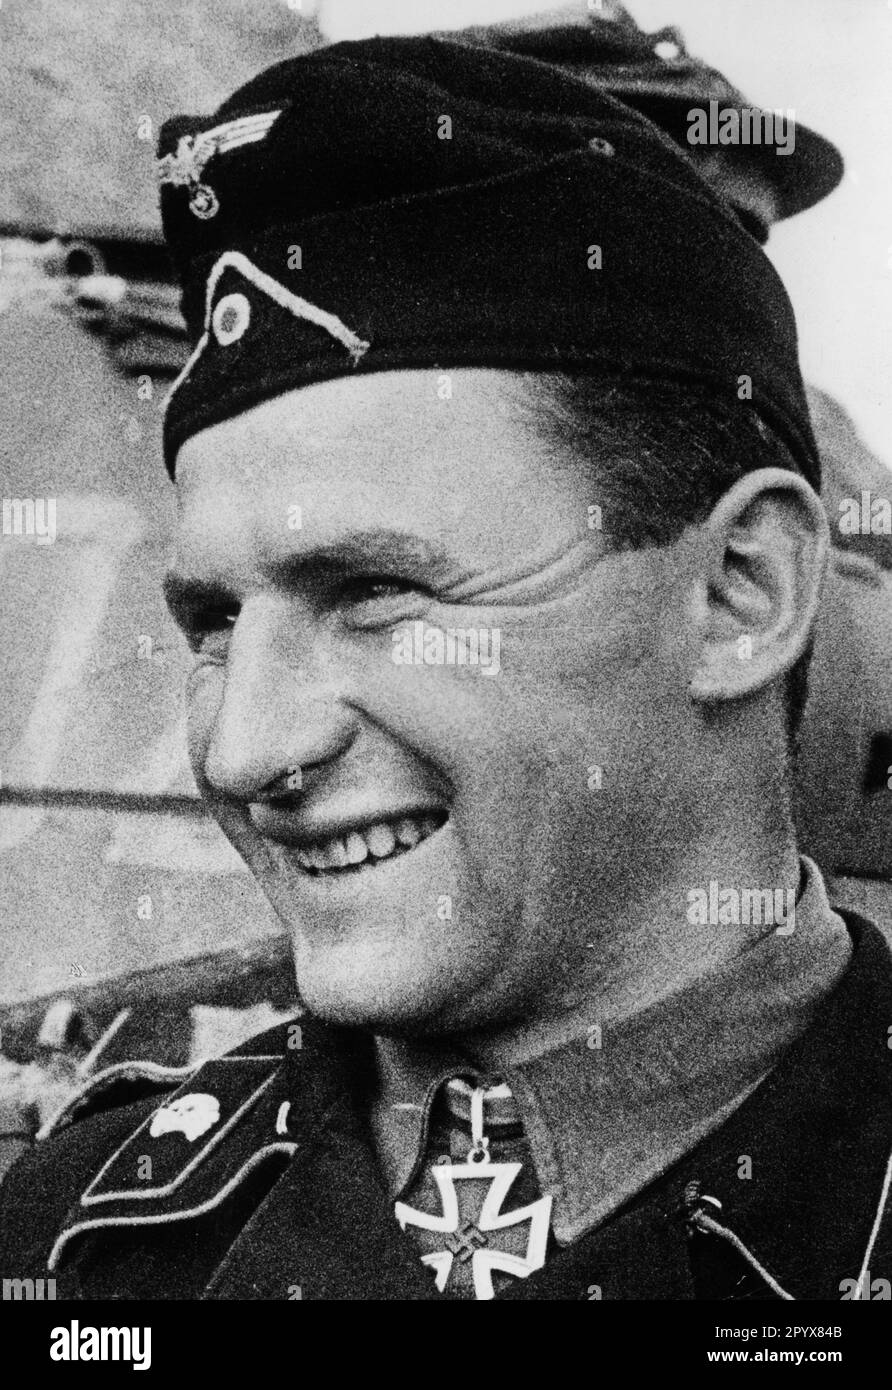 Il sergente maggiore Erdmann Gabriel, leader plotone nel Panzer Regiment 35, dopo aver ricevuto la Croce del Cavaliere sul fronte orientale. Foto: Eckert. [traduzione automatica] Foto Stock